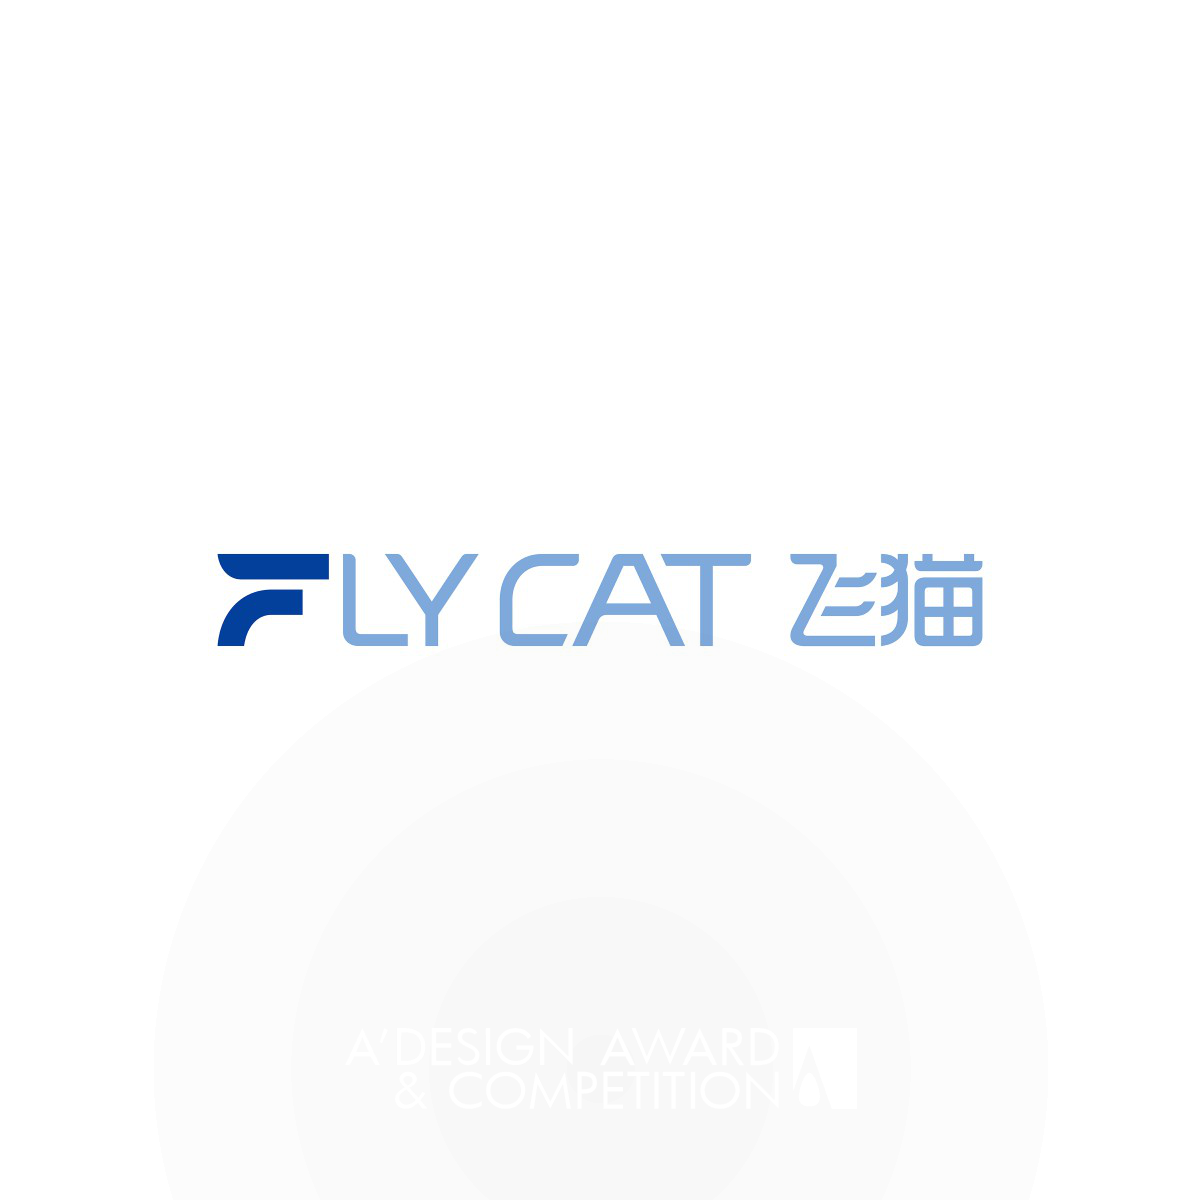 ब्रांड आइडेंटिटी का नवीनतम रूप: Flycat